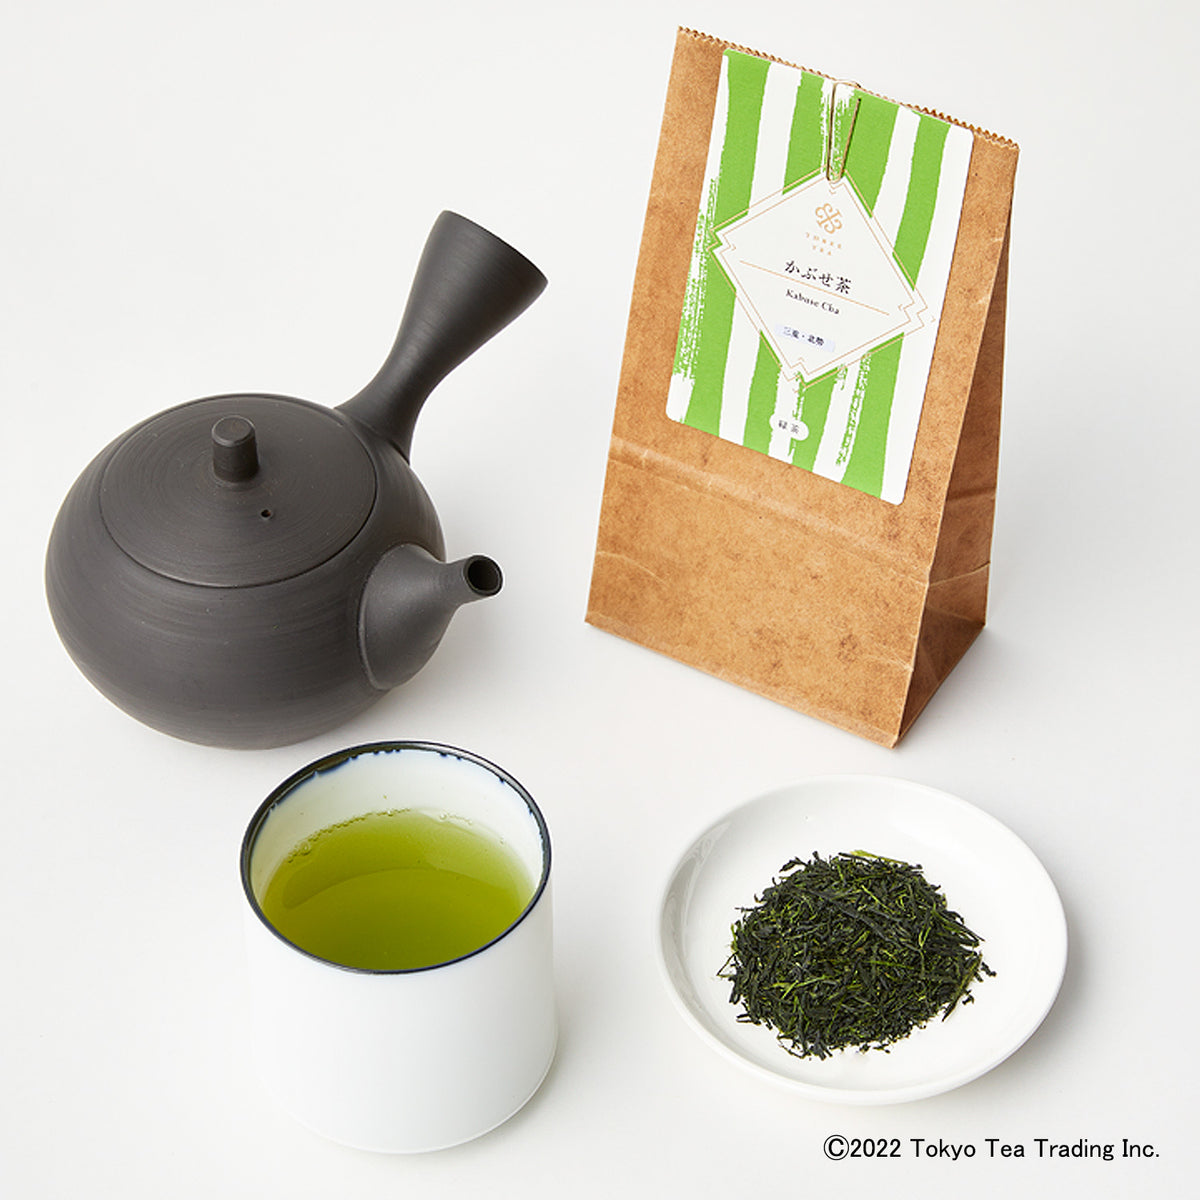 かぶせ茶15g(三重・北勢産)-煎茶と玉露の良さを持ち合わせたかぶせ茶 